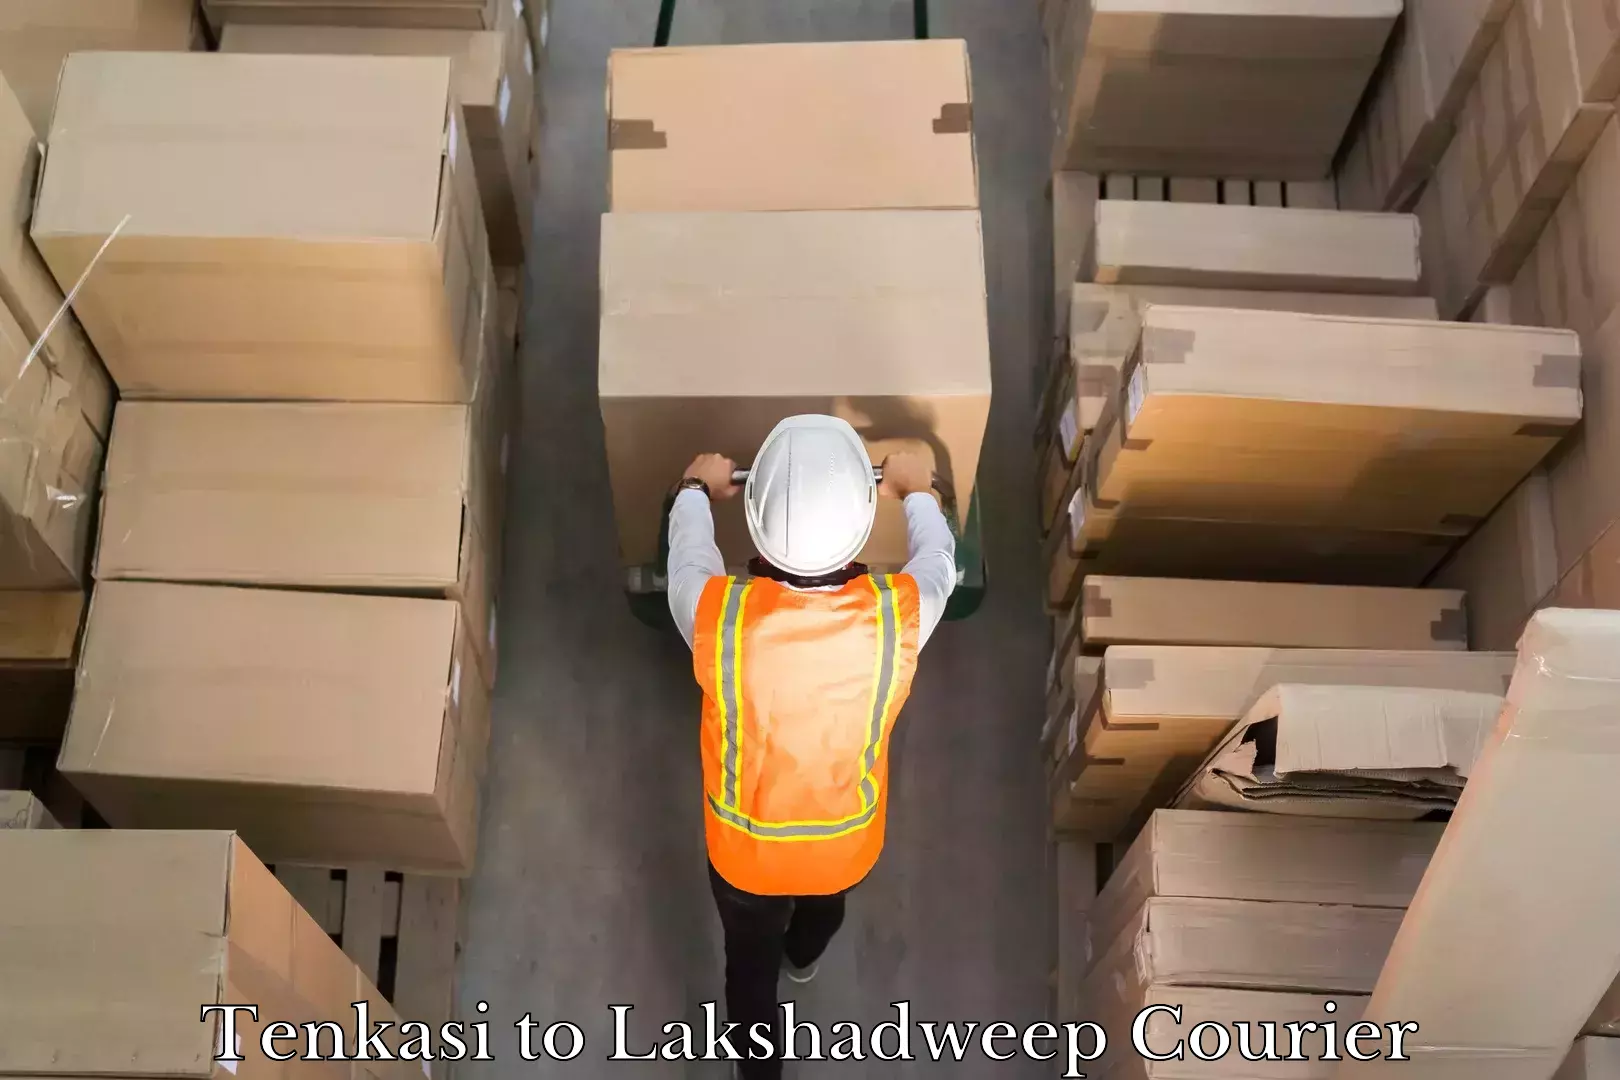 High-speed logistics services Tenkasi to Lakshadweep